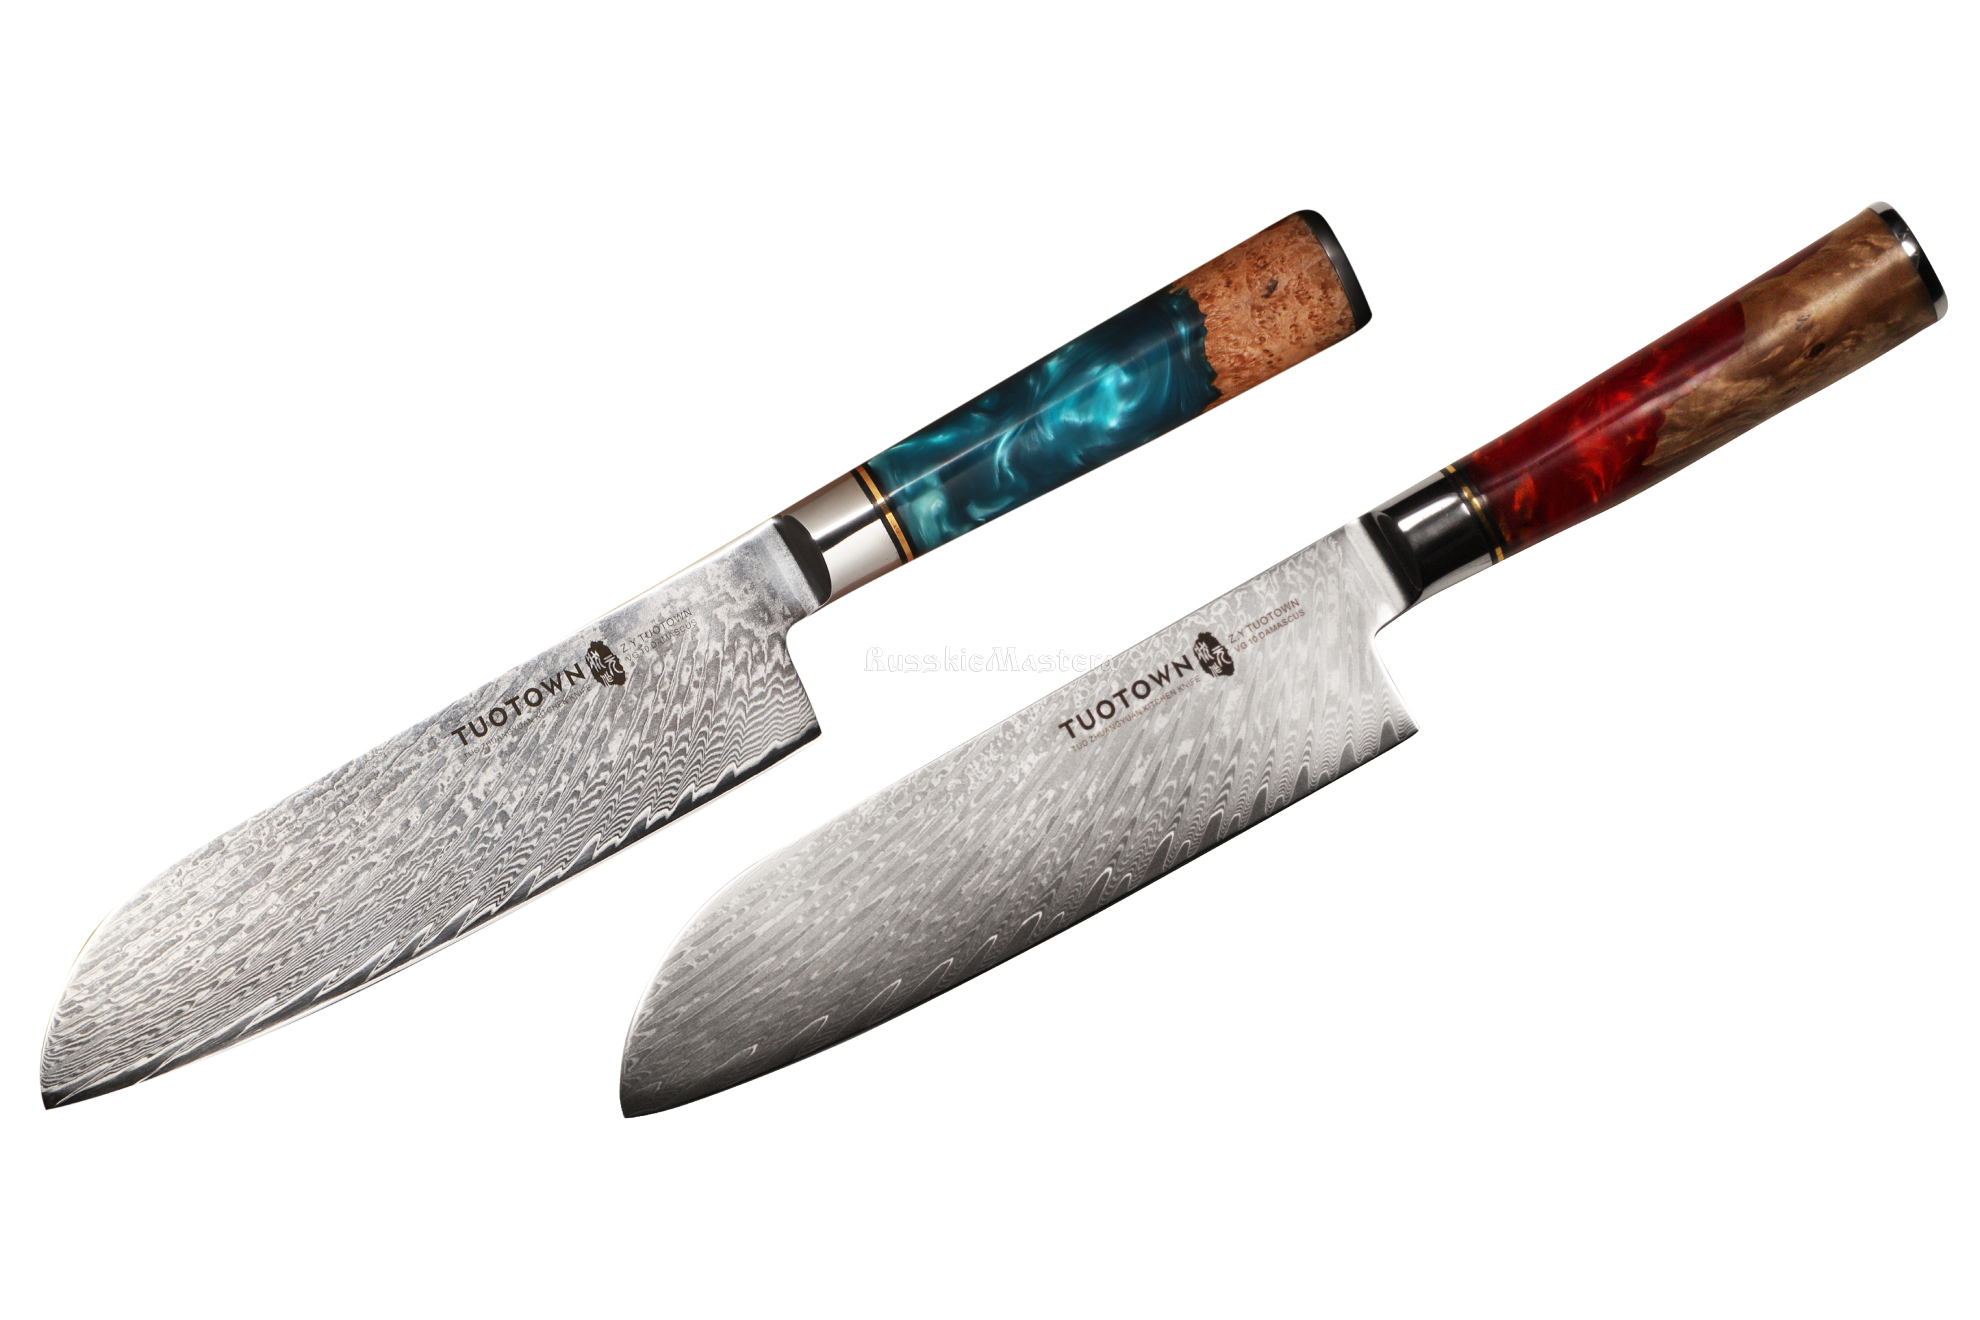 Поварской шеф-нож (кухонный нож Сантоку) SA180 D6 TUOTOWN (TWB-D6/TWR-D6), VG10 дамаск, рукоять акрил-дерево, 18 см.